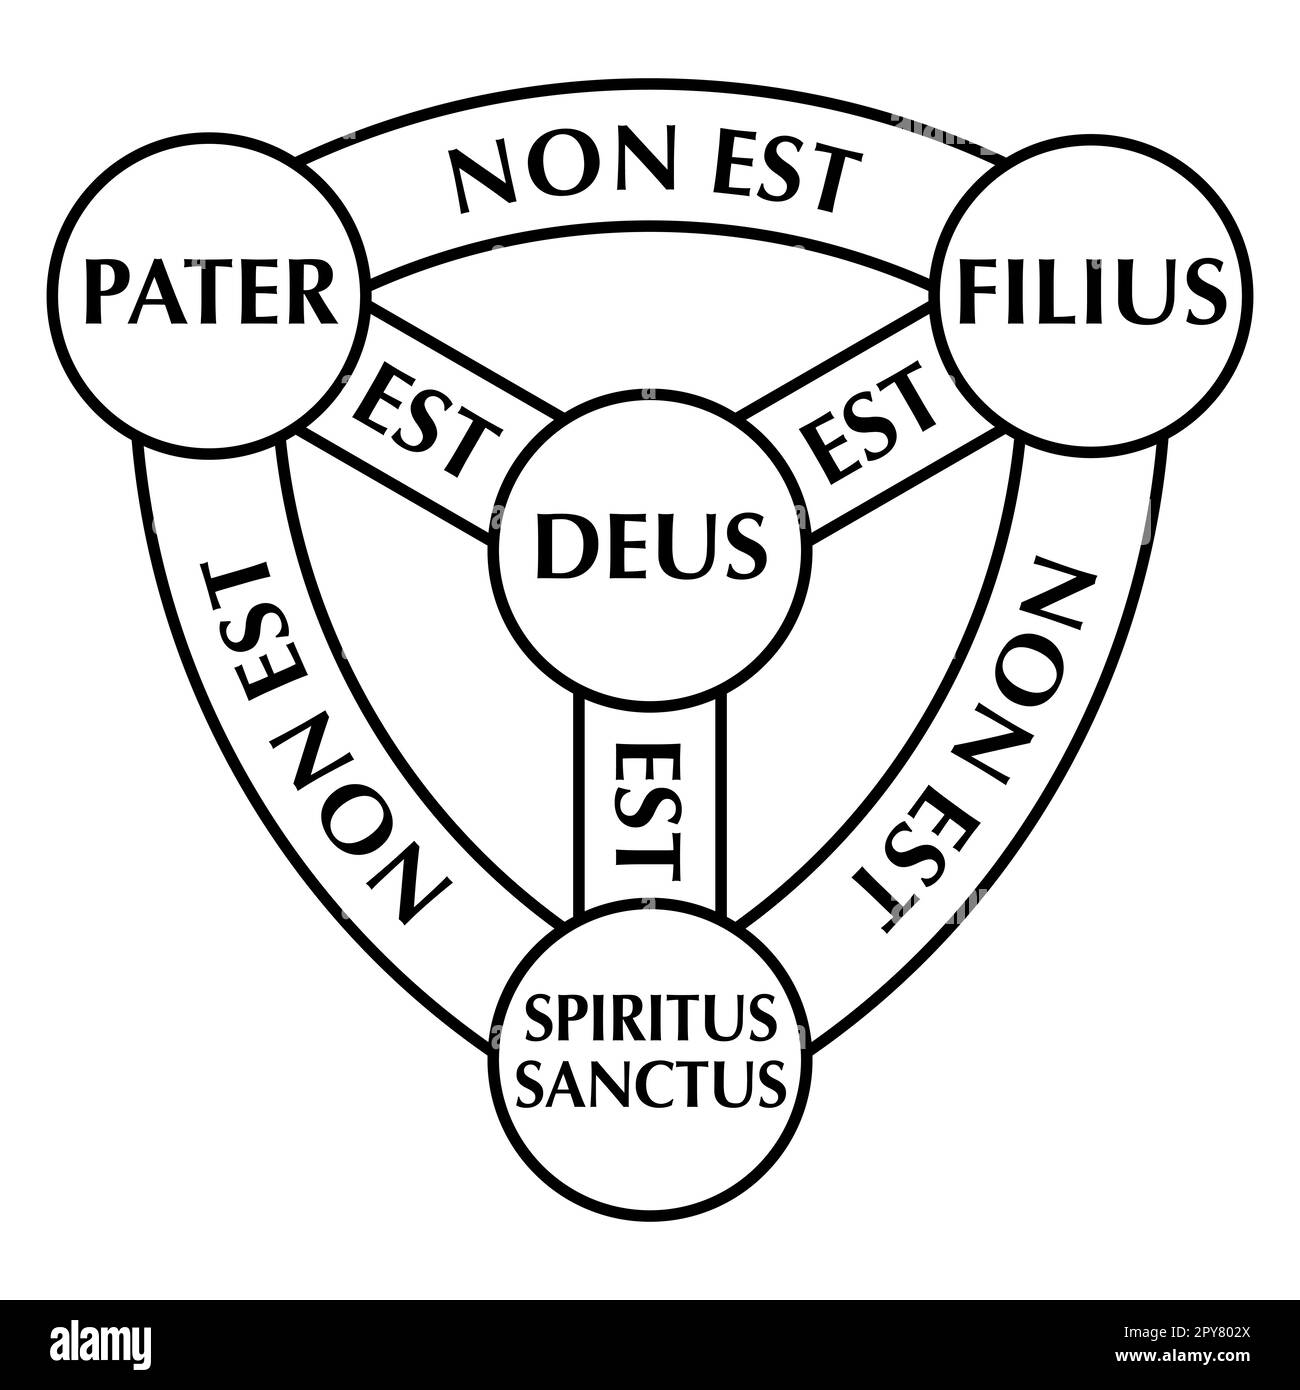 Schild der Dreifaltigkeit, Diagramm von Scutum Fidei, Schild des Glaubens. Mittelalterliches christliches Symbol und heraldische Arme Gottes. Stockfoto